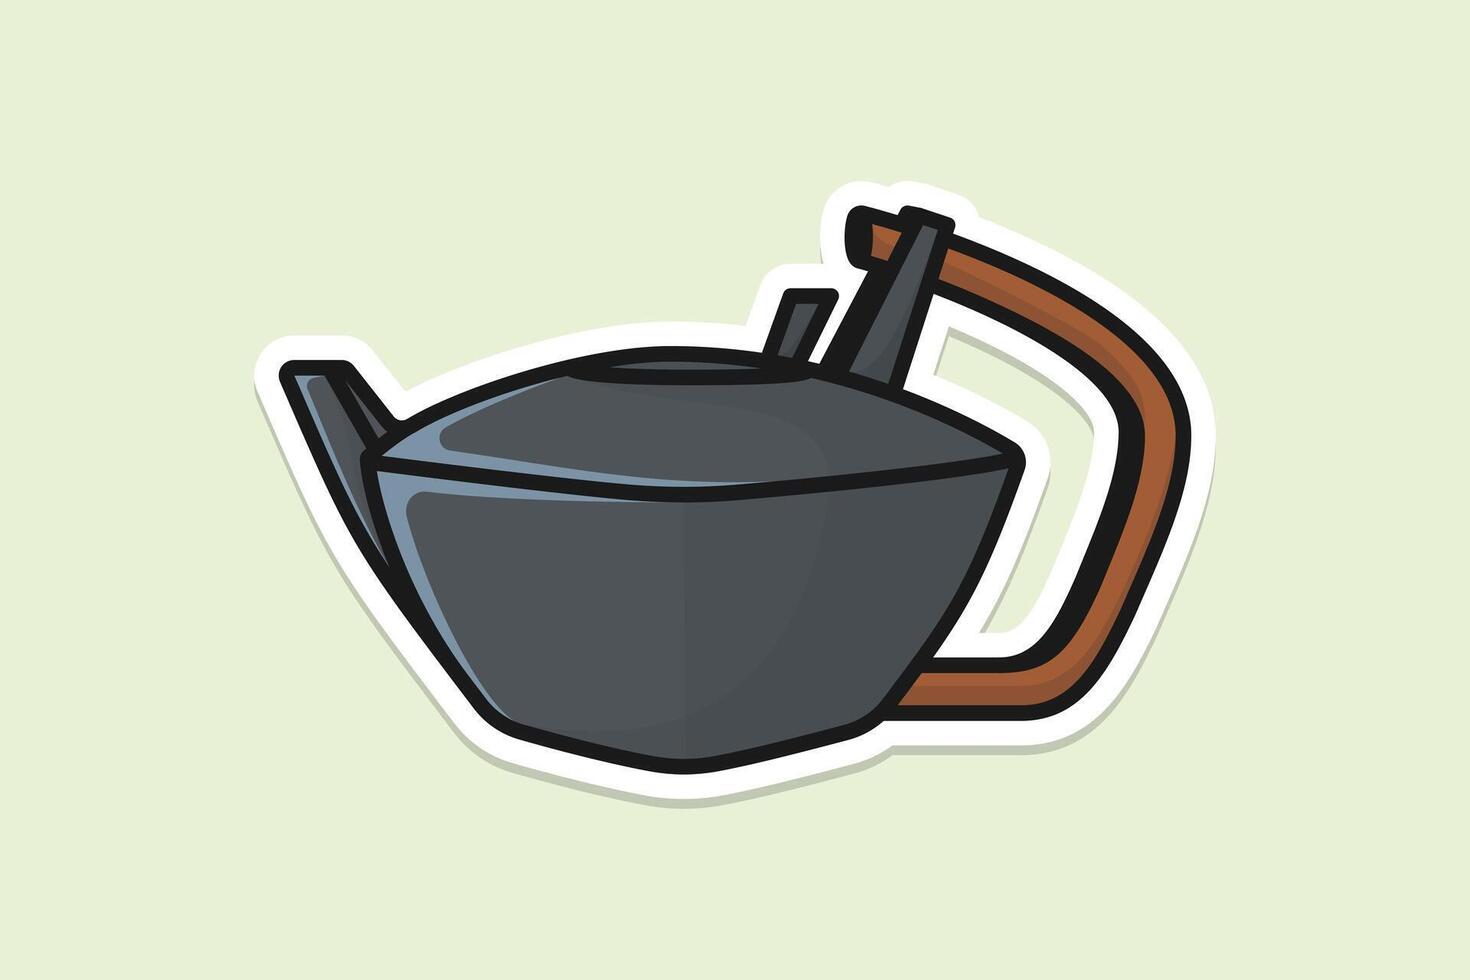 mooi grijs thee waterkoker sticker ontwerp vector illustratie. keuken interieur voorwerp icoon concept. ochtend- thee theepot met Gesloten deksel sticker ontwerp met schaduw.